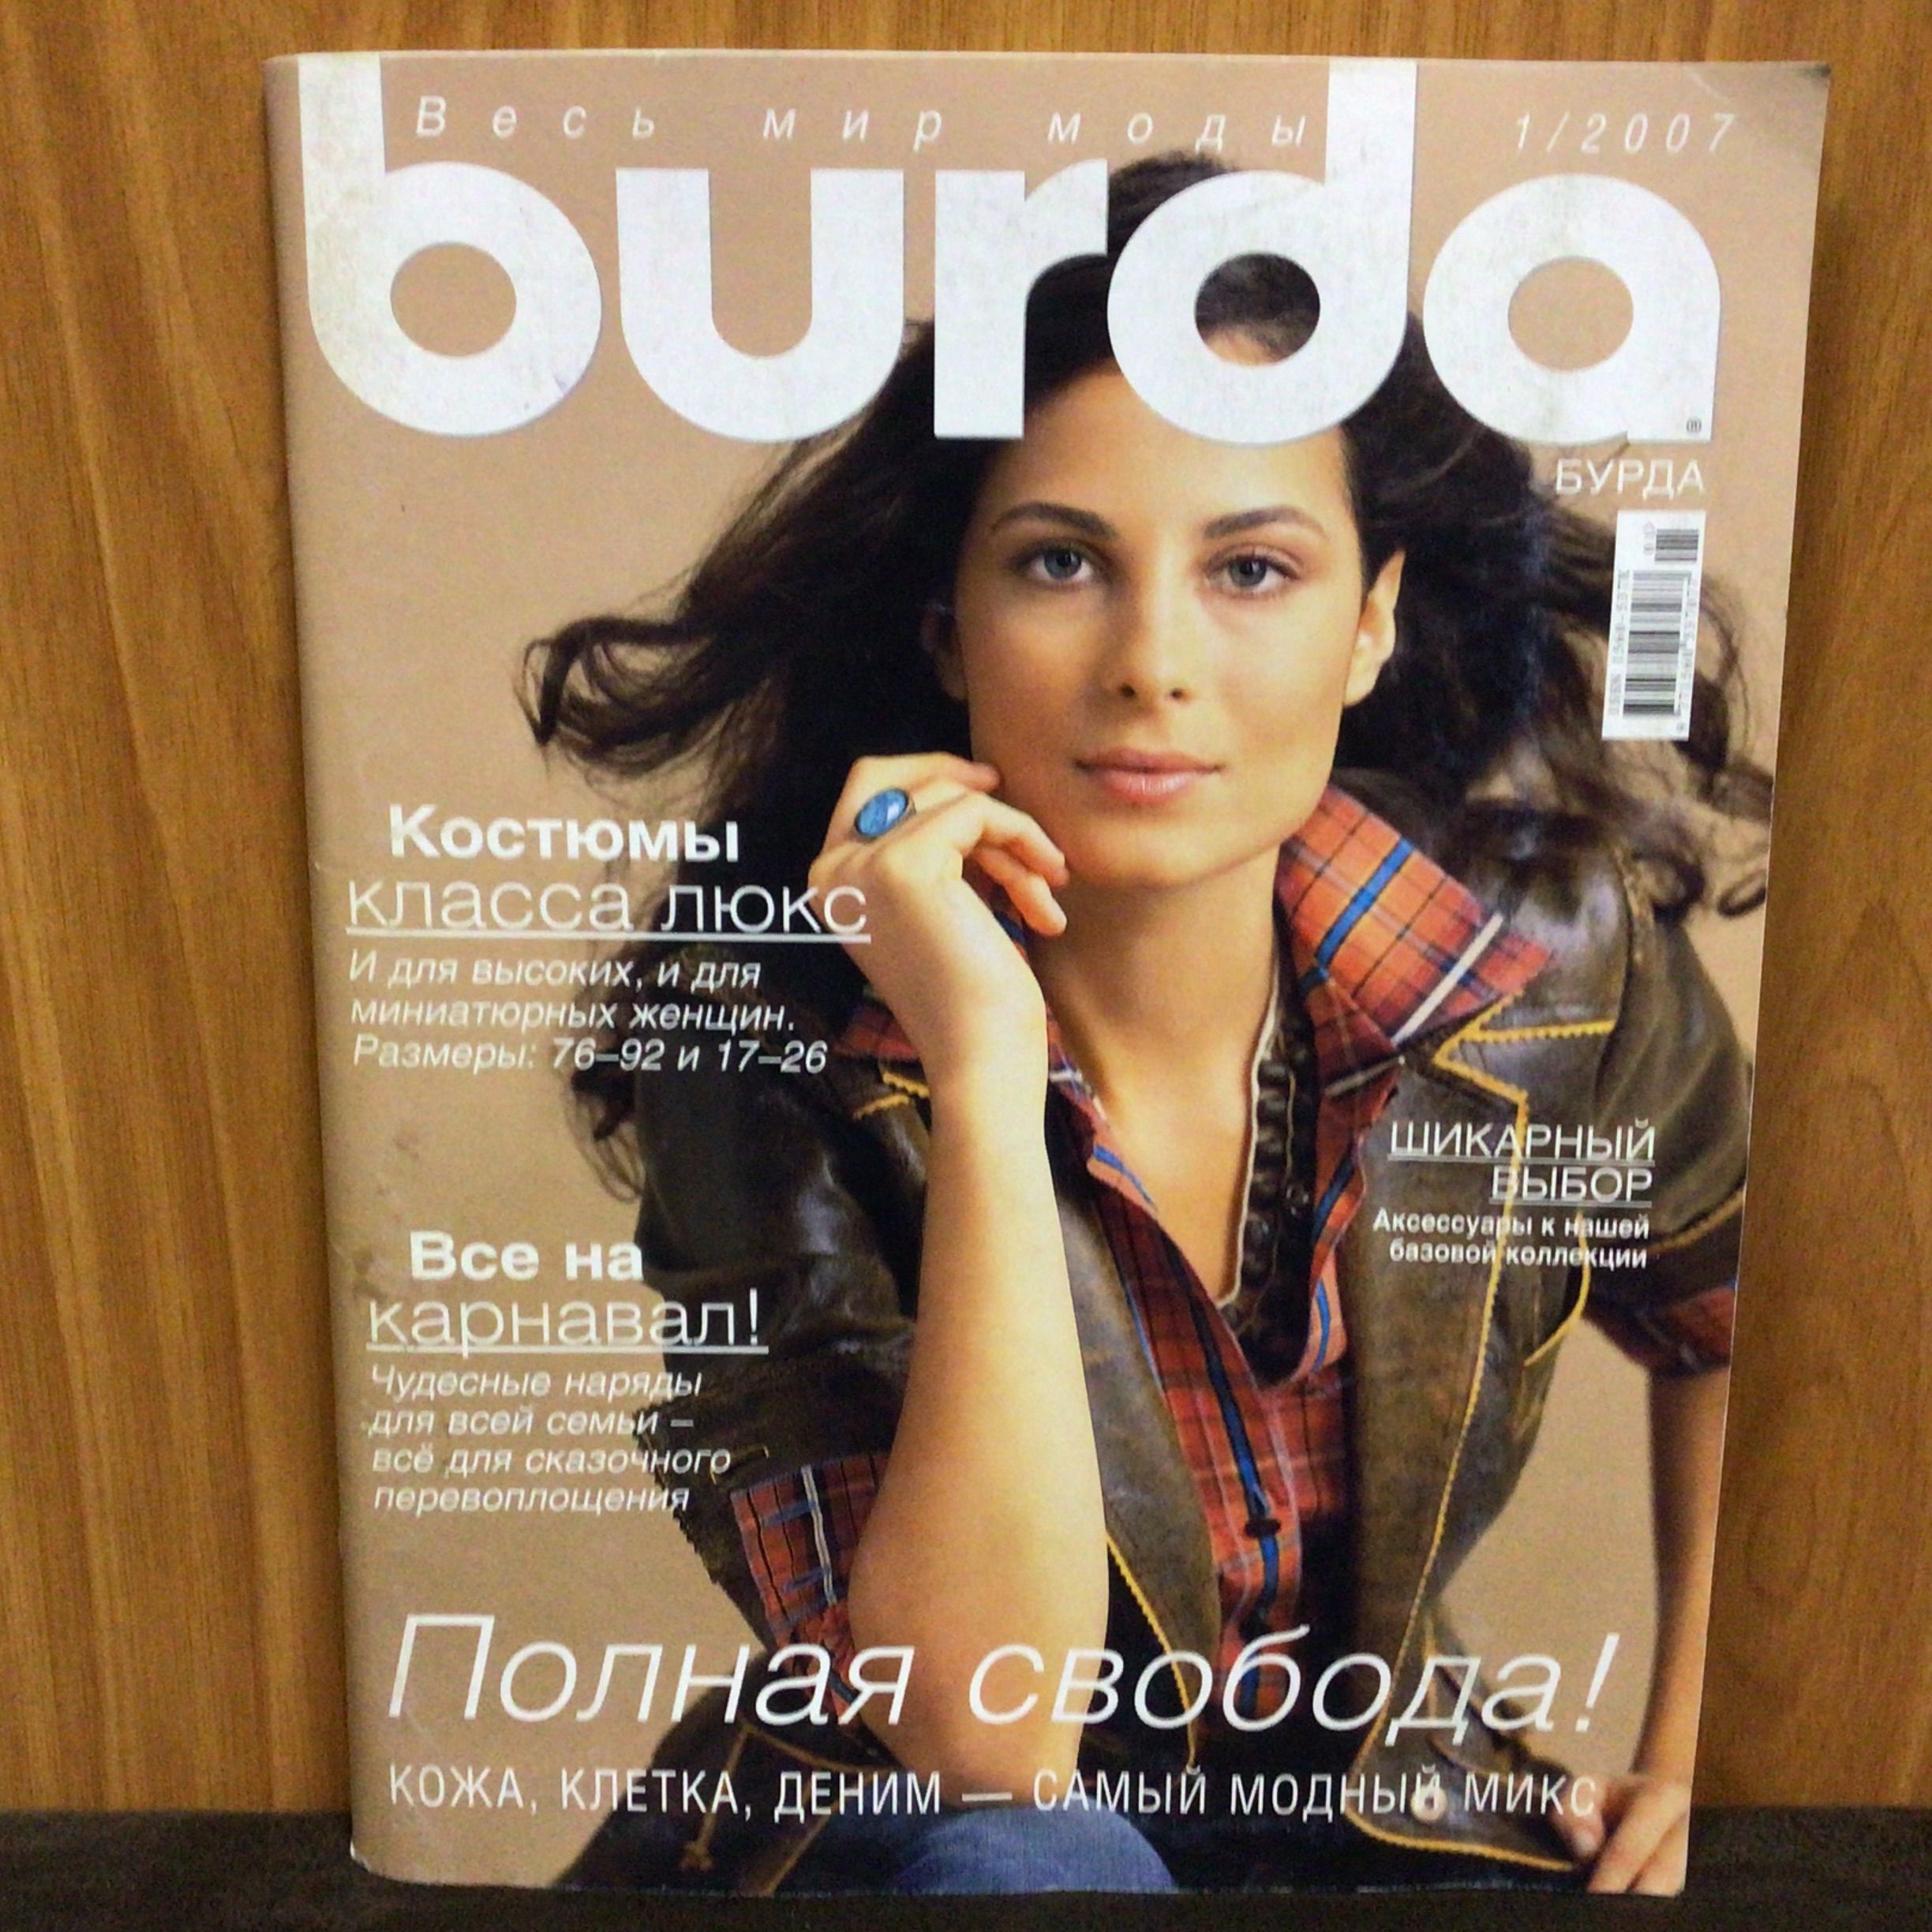 Burda 1/ на hb-crm.ru